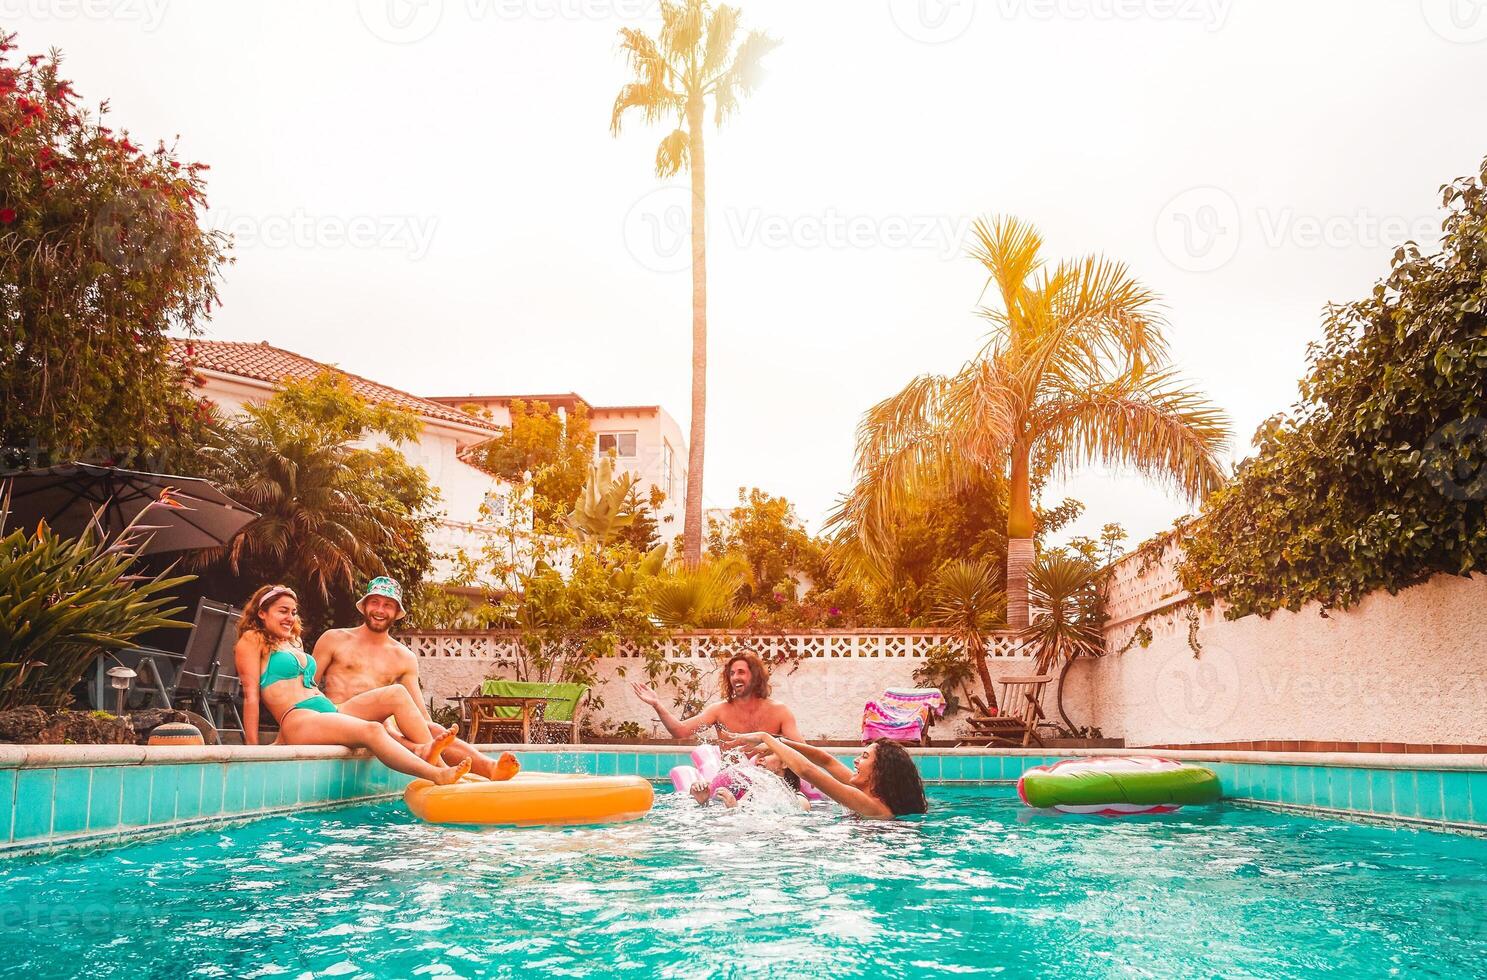 grupo de contento amigos relajante en nadando piscina - joven personas teniendo divertido flotante en aire lilo durante verano tropical vacaciones - amistad, Días festivos y juventud estilo de vida concepto foto